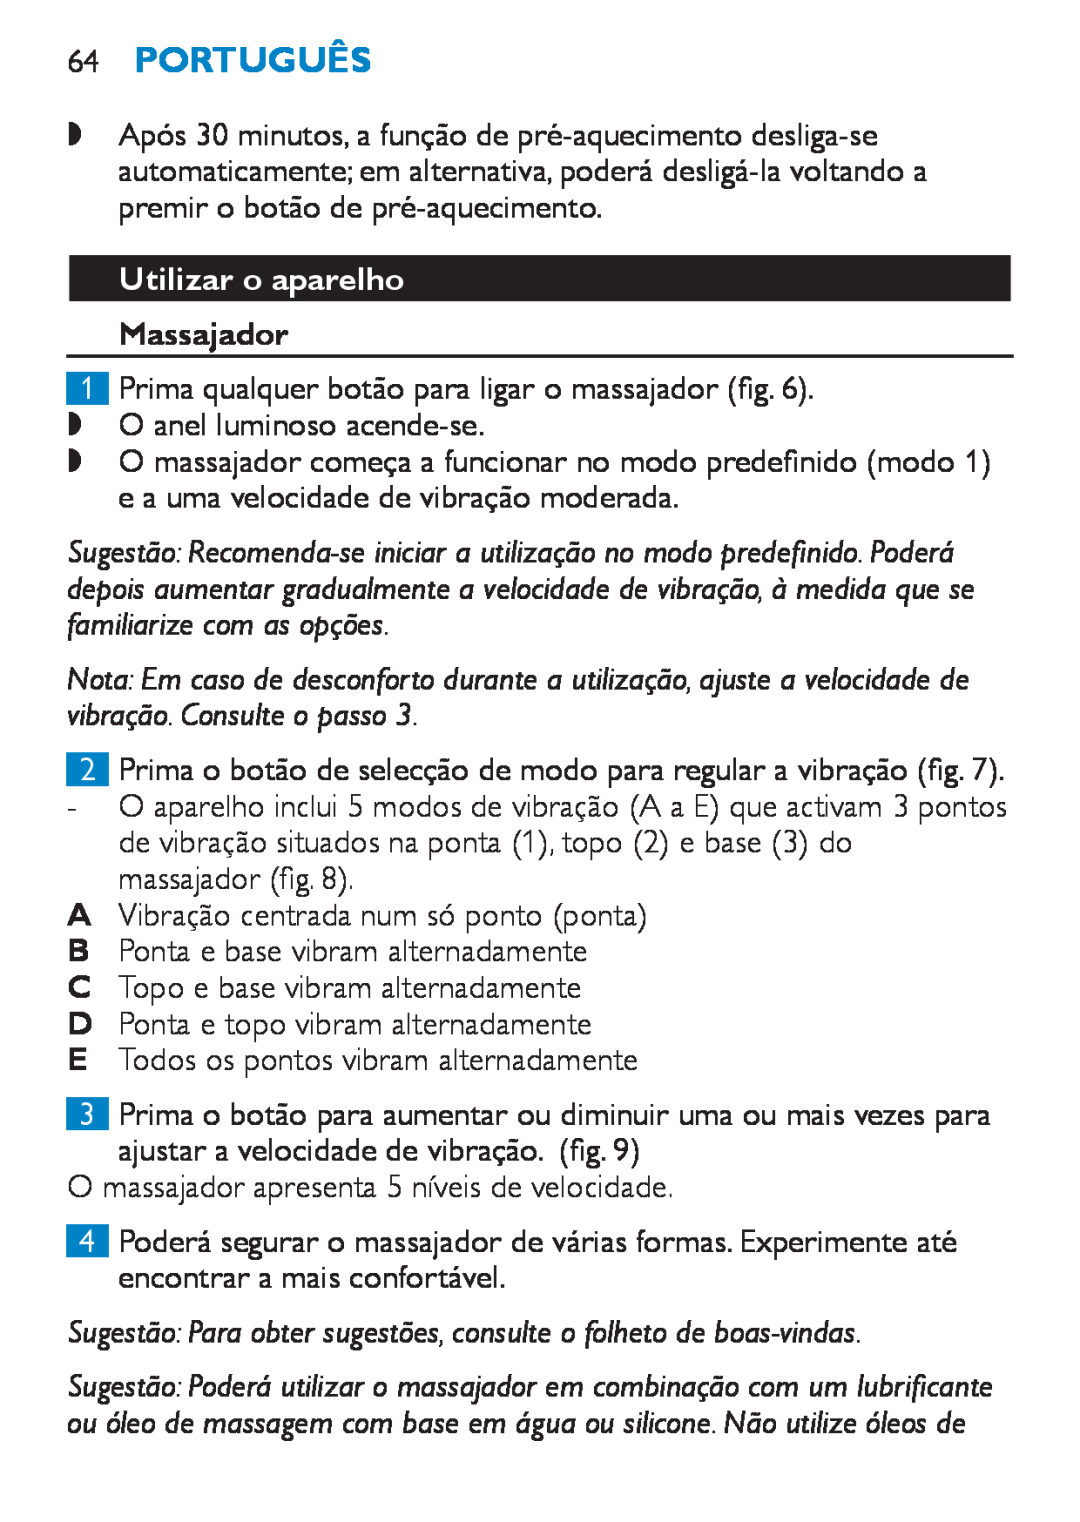 Philips HF8430 manual 64Português, Utilizar o aparelho Massajador 